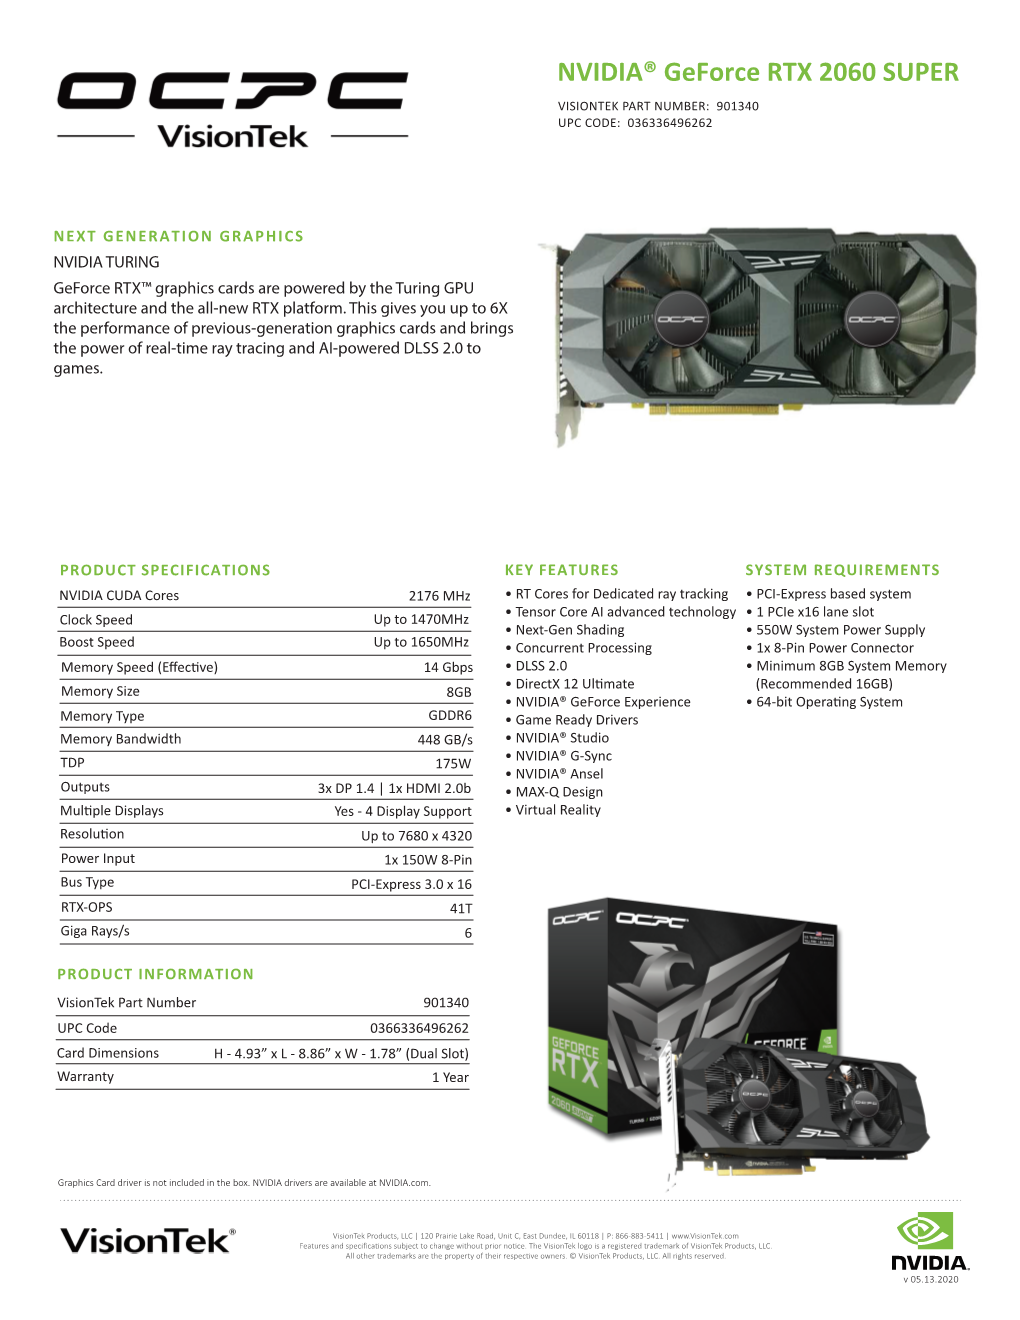 OCPC NVIDIA RTX 2060 SUPER Spec Sheet